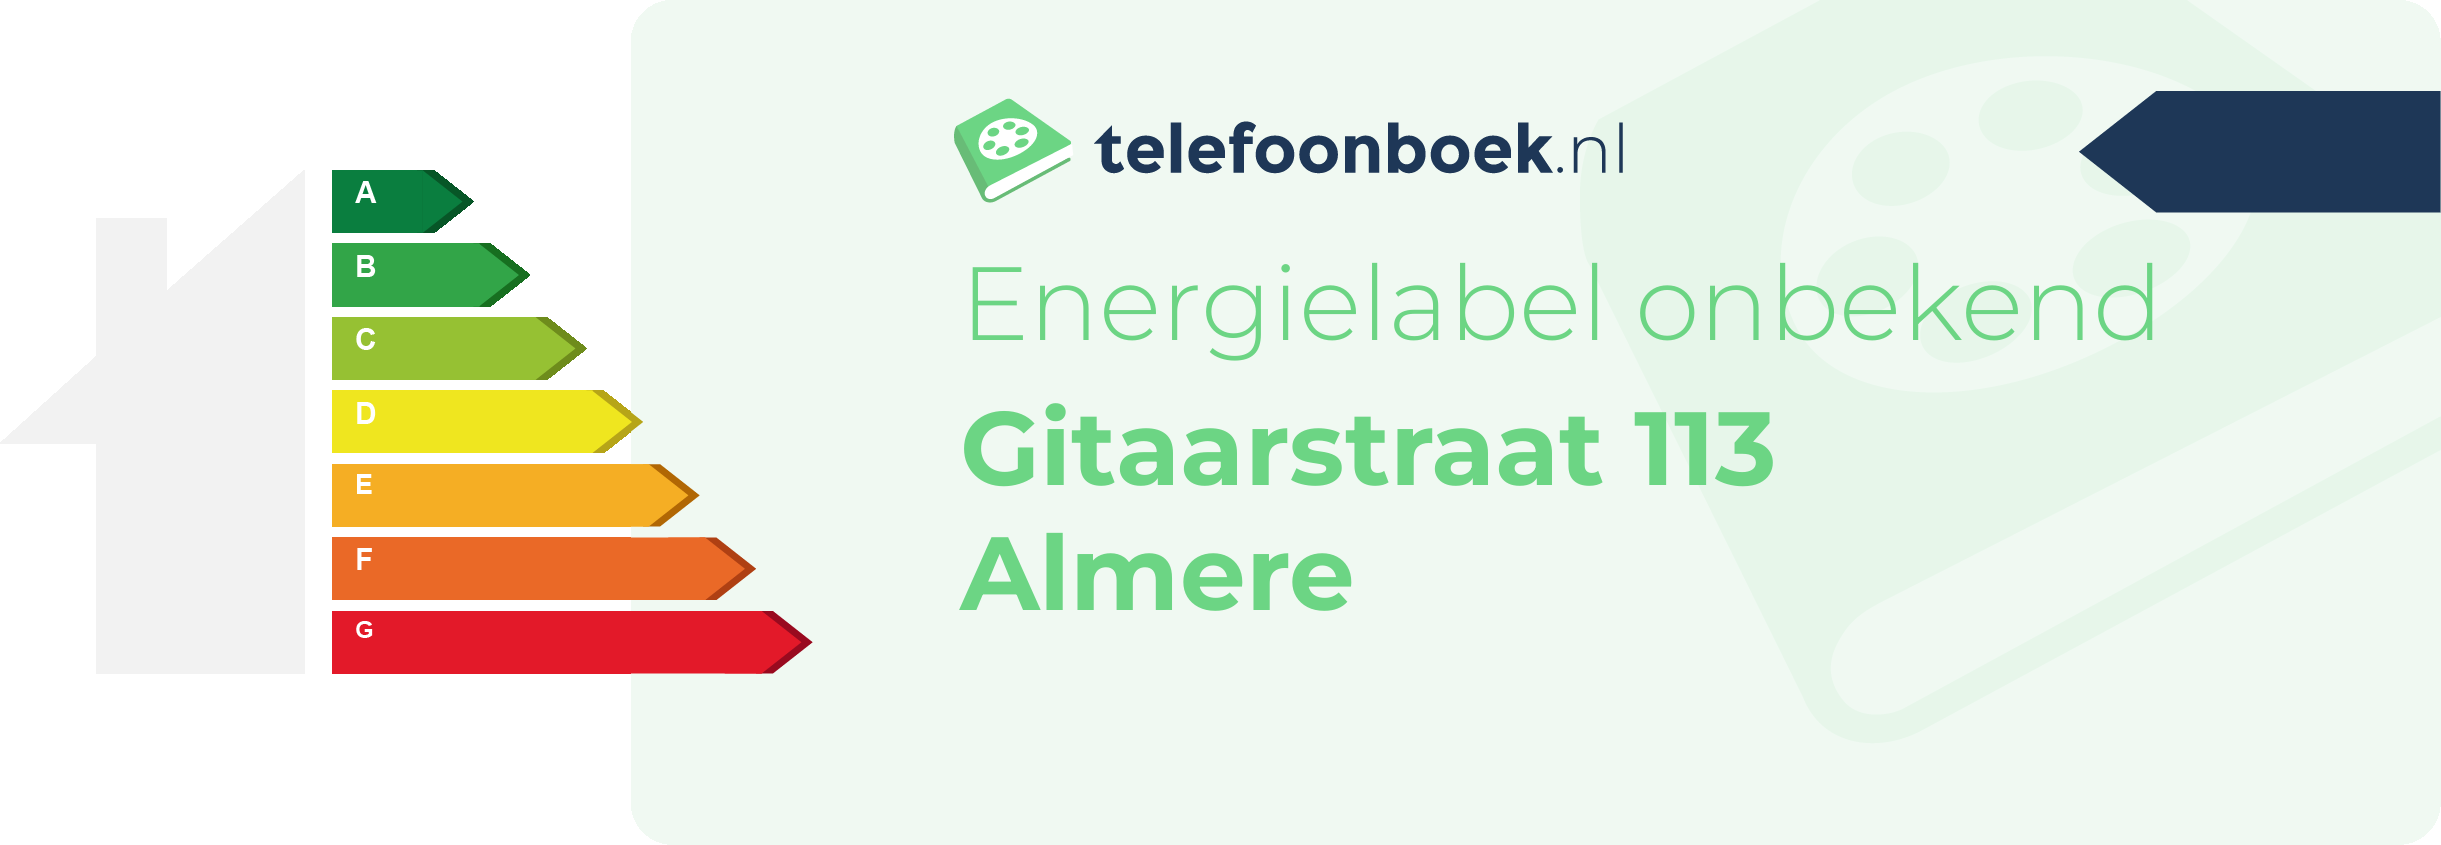 Energielabel Gitaarstraat 113 Almere